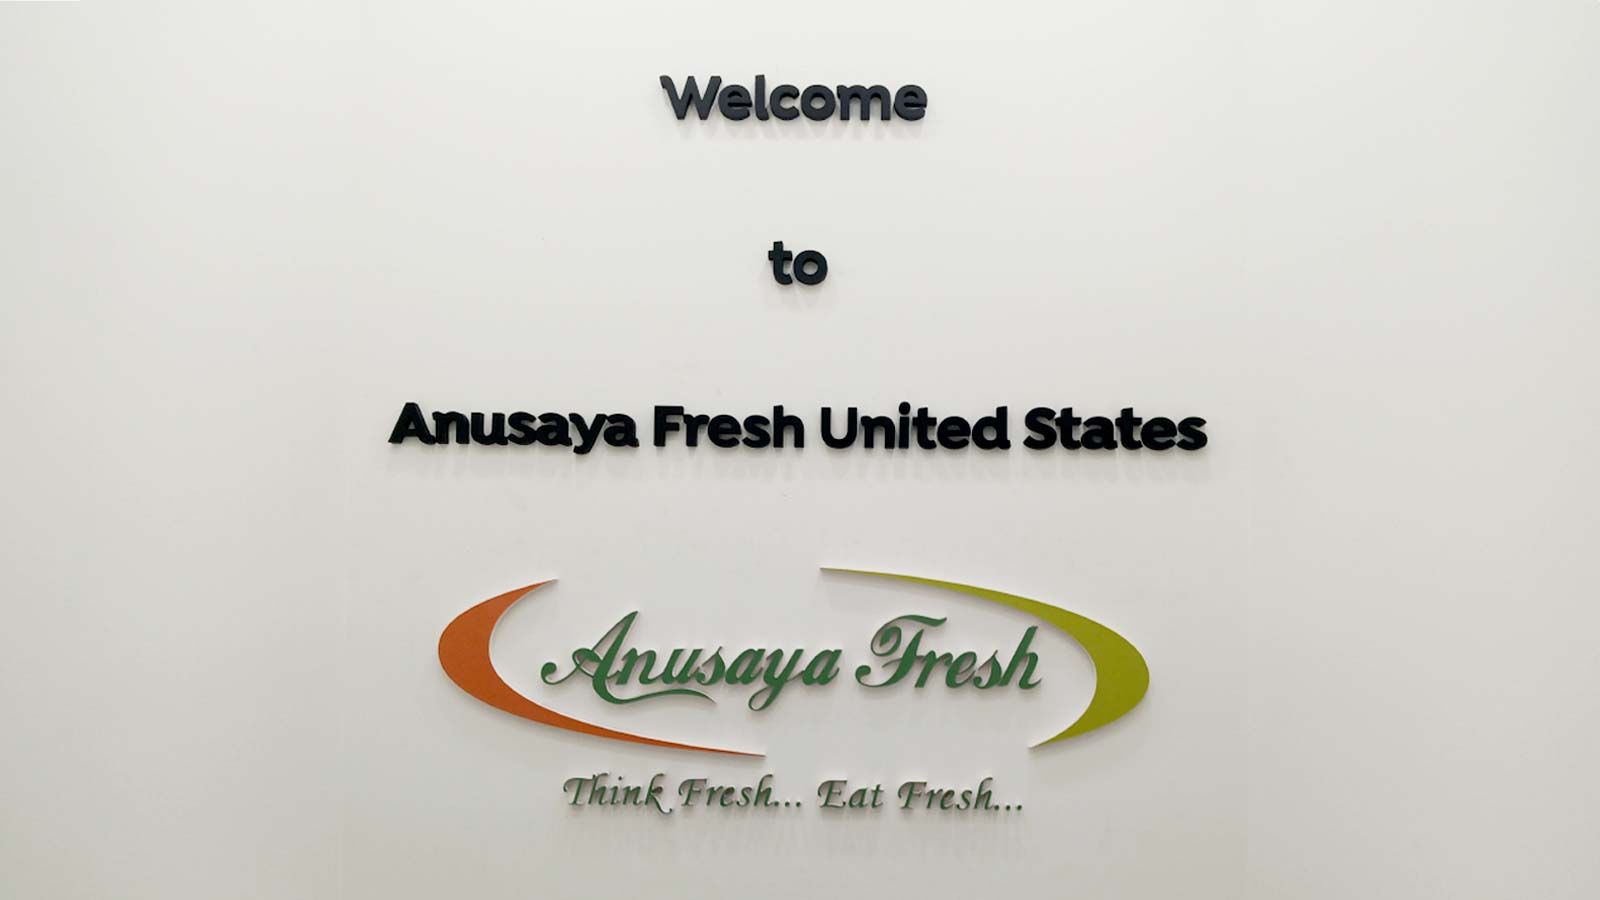 Anusaya Fresh lobby sign